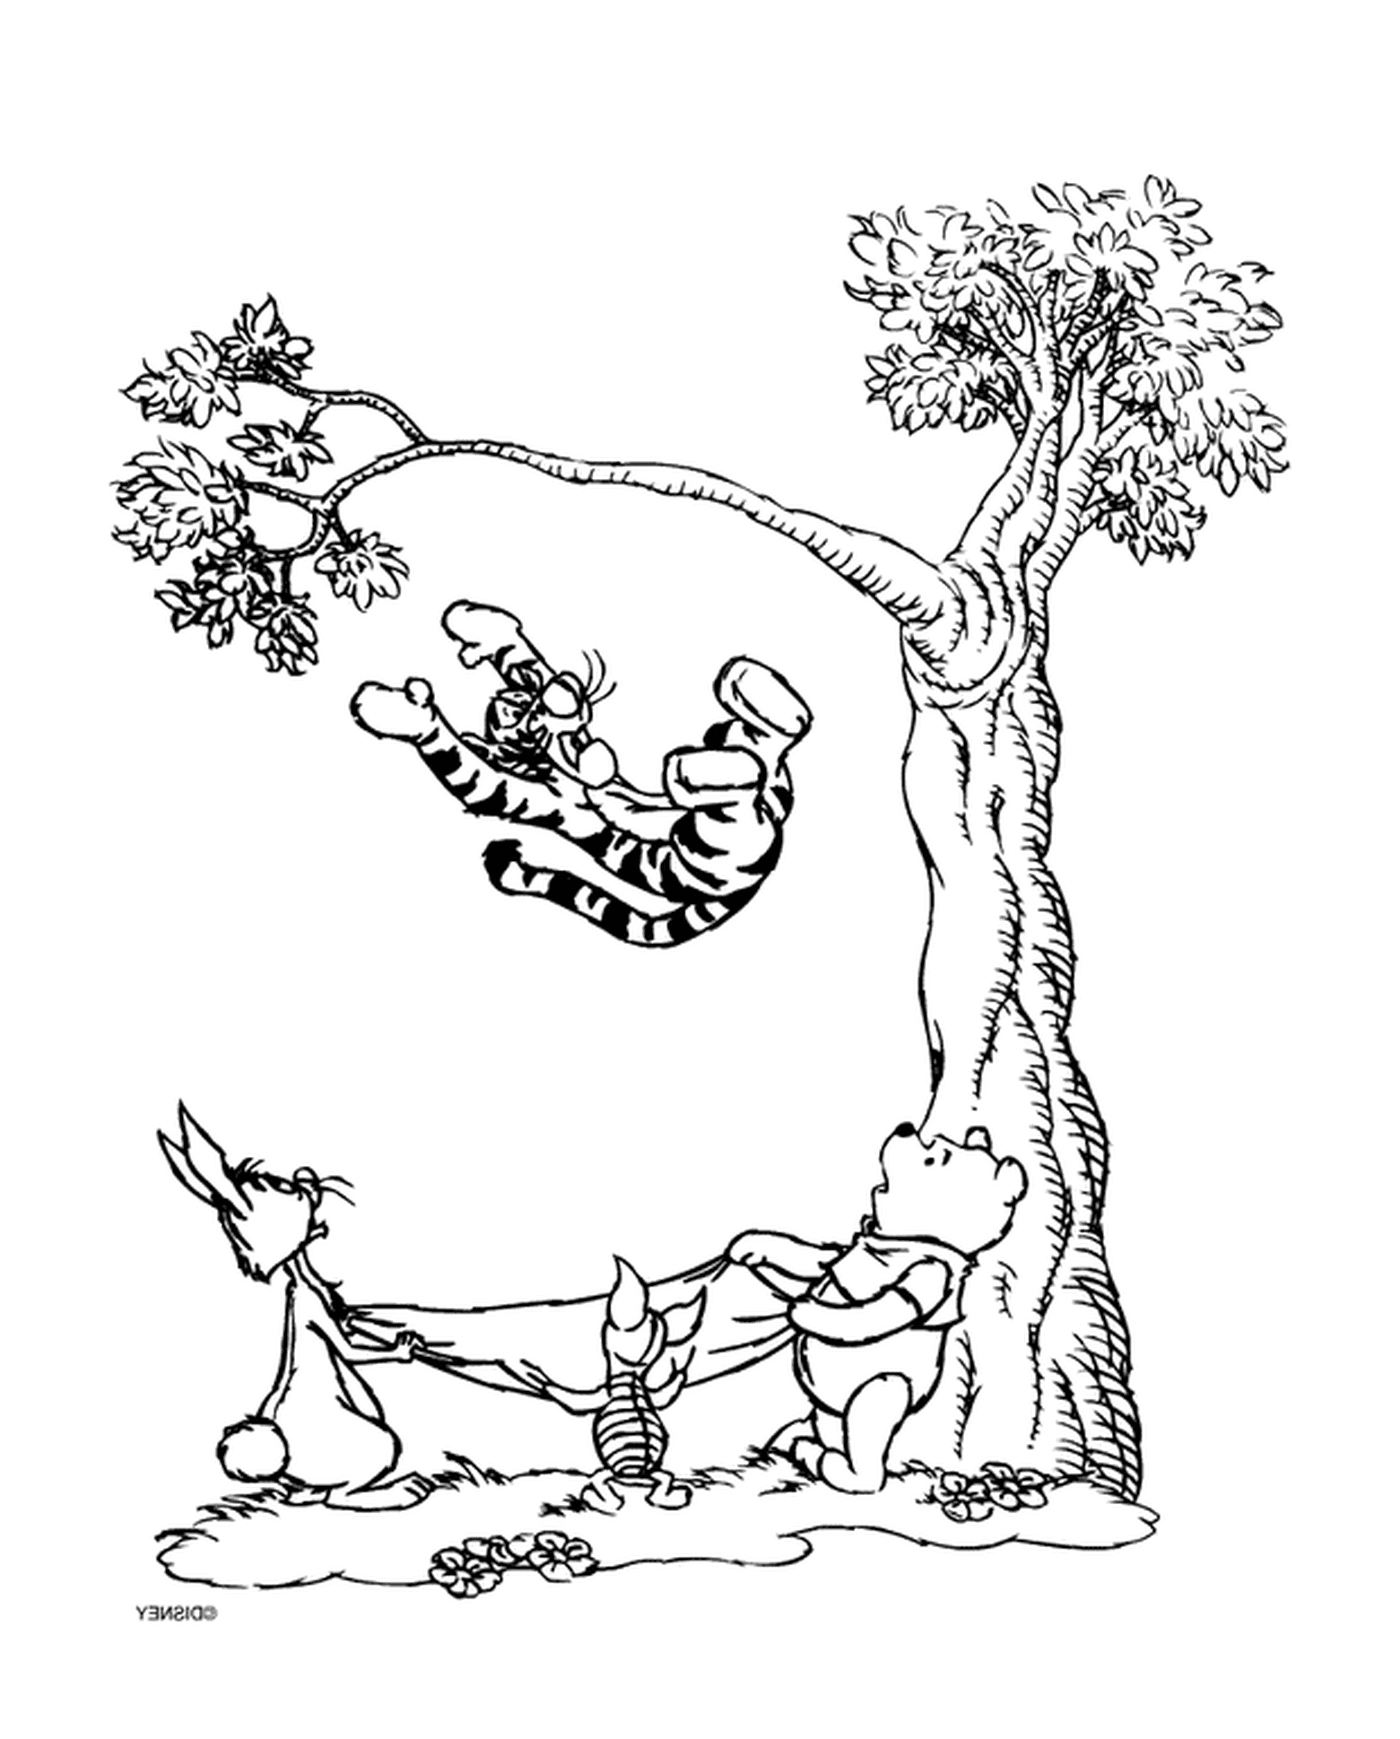   Winnie l'ourson et Tigrou sur une branche d'arbre 